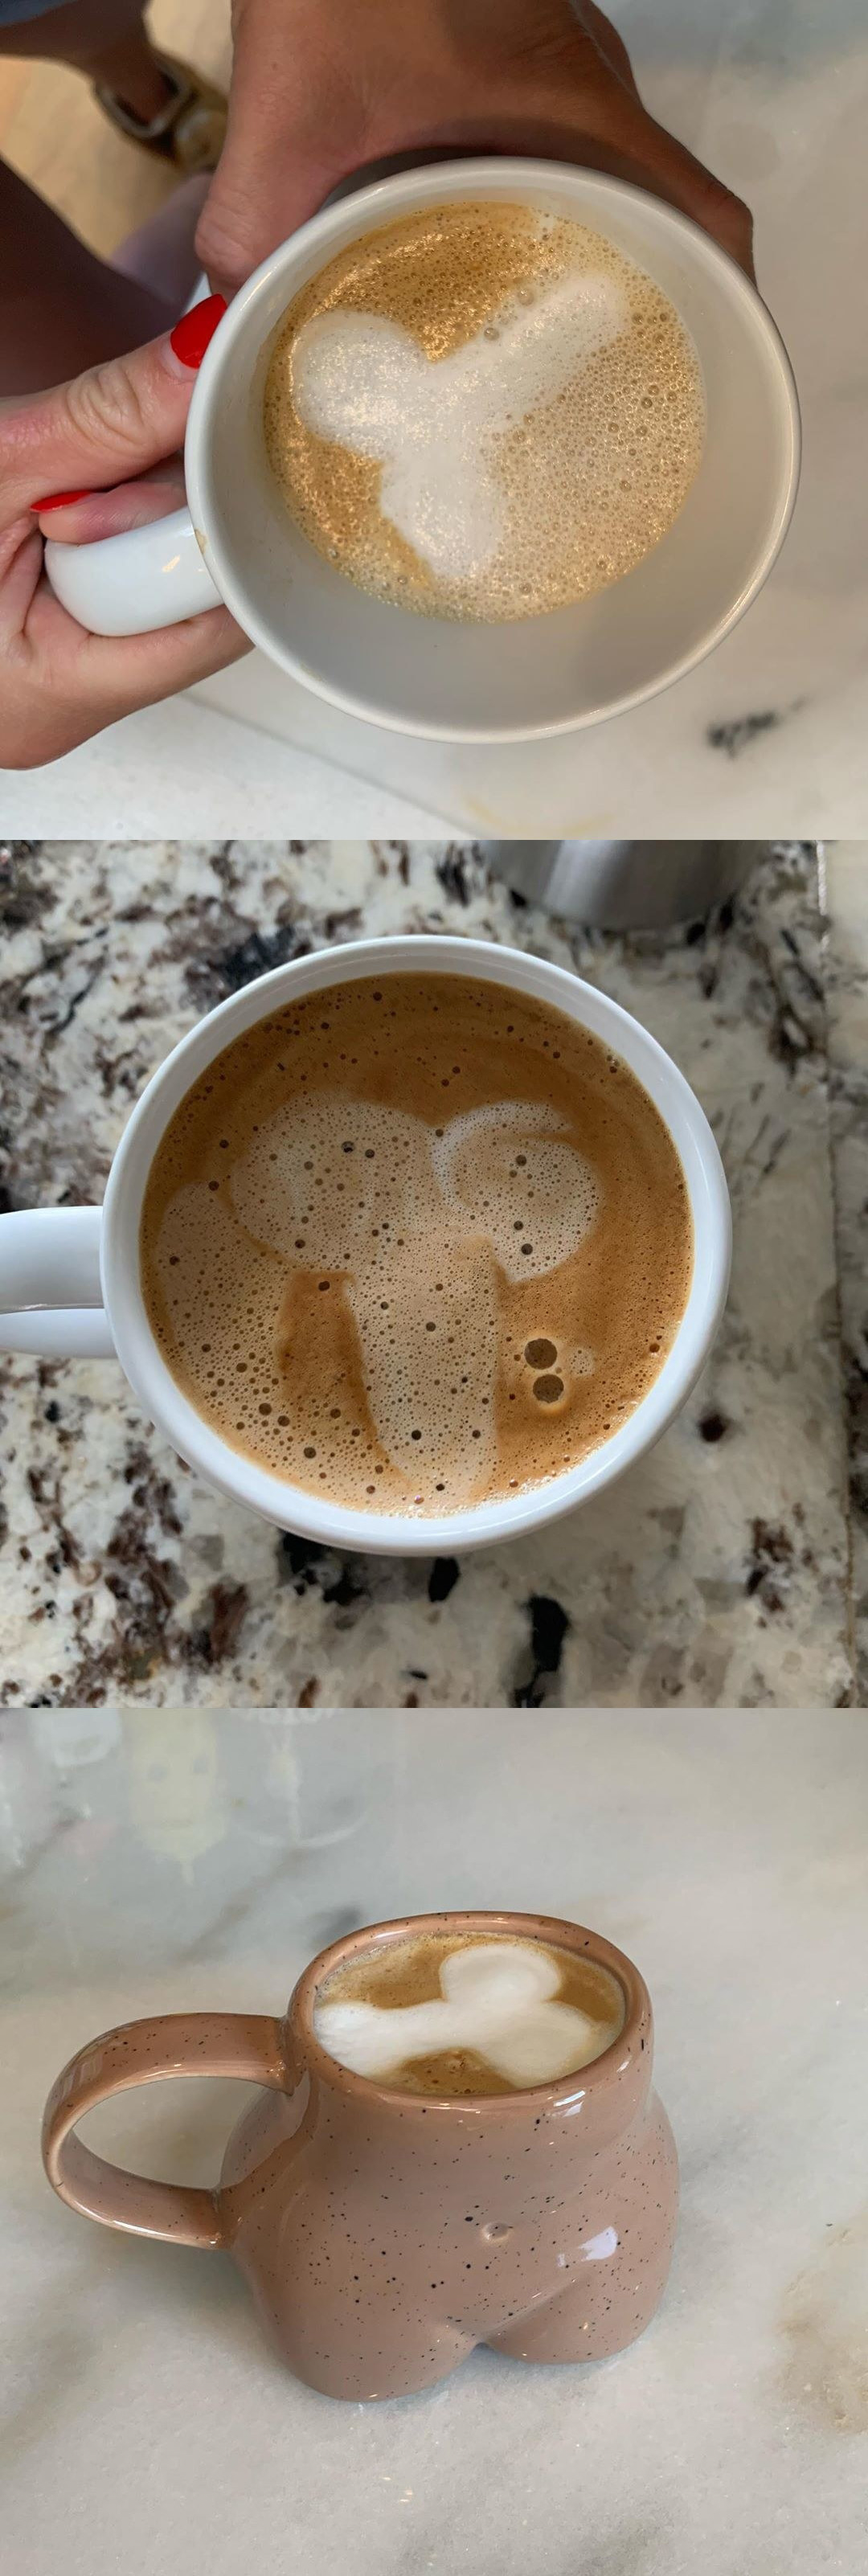 Penis latte art